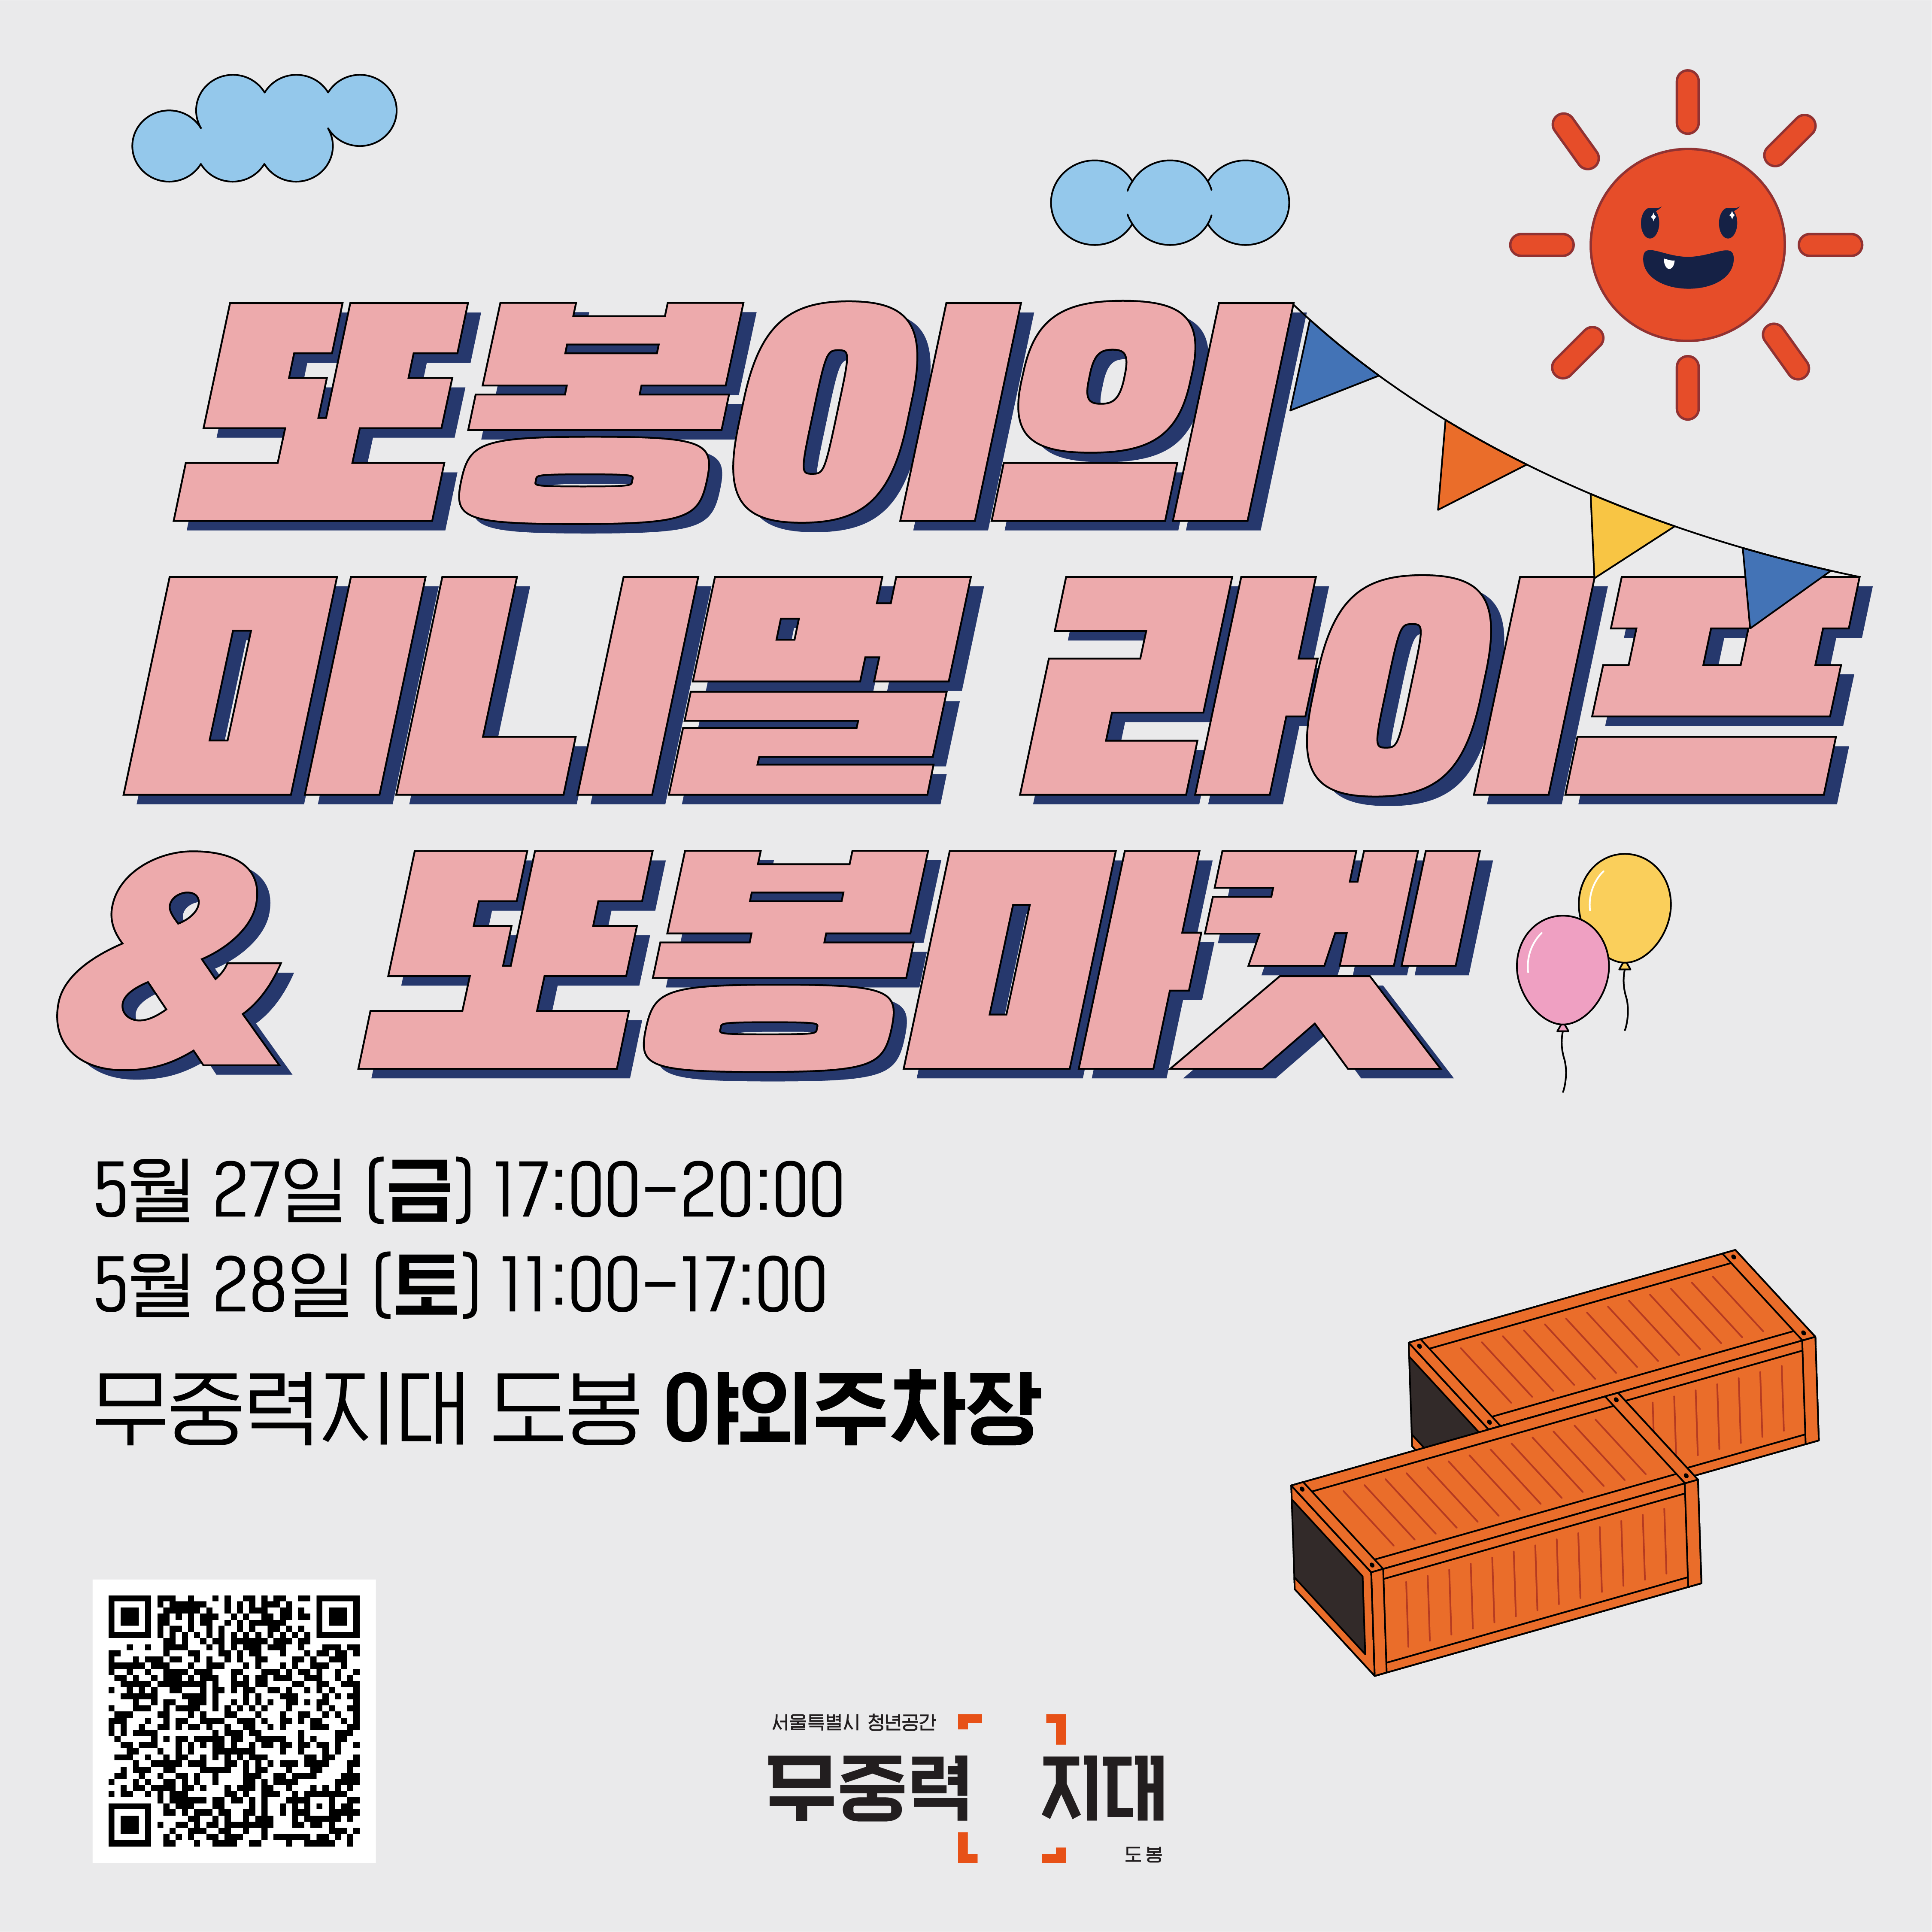 무중력지대 도봉 <또봉마켓> 개최 안내 (5/27~28)